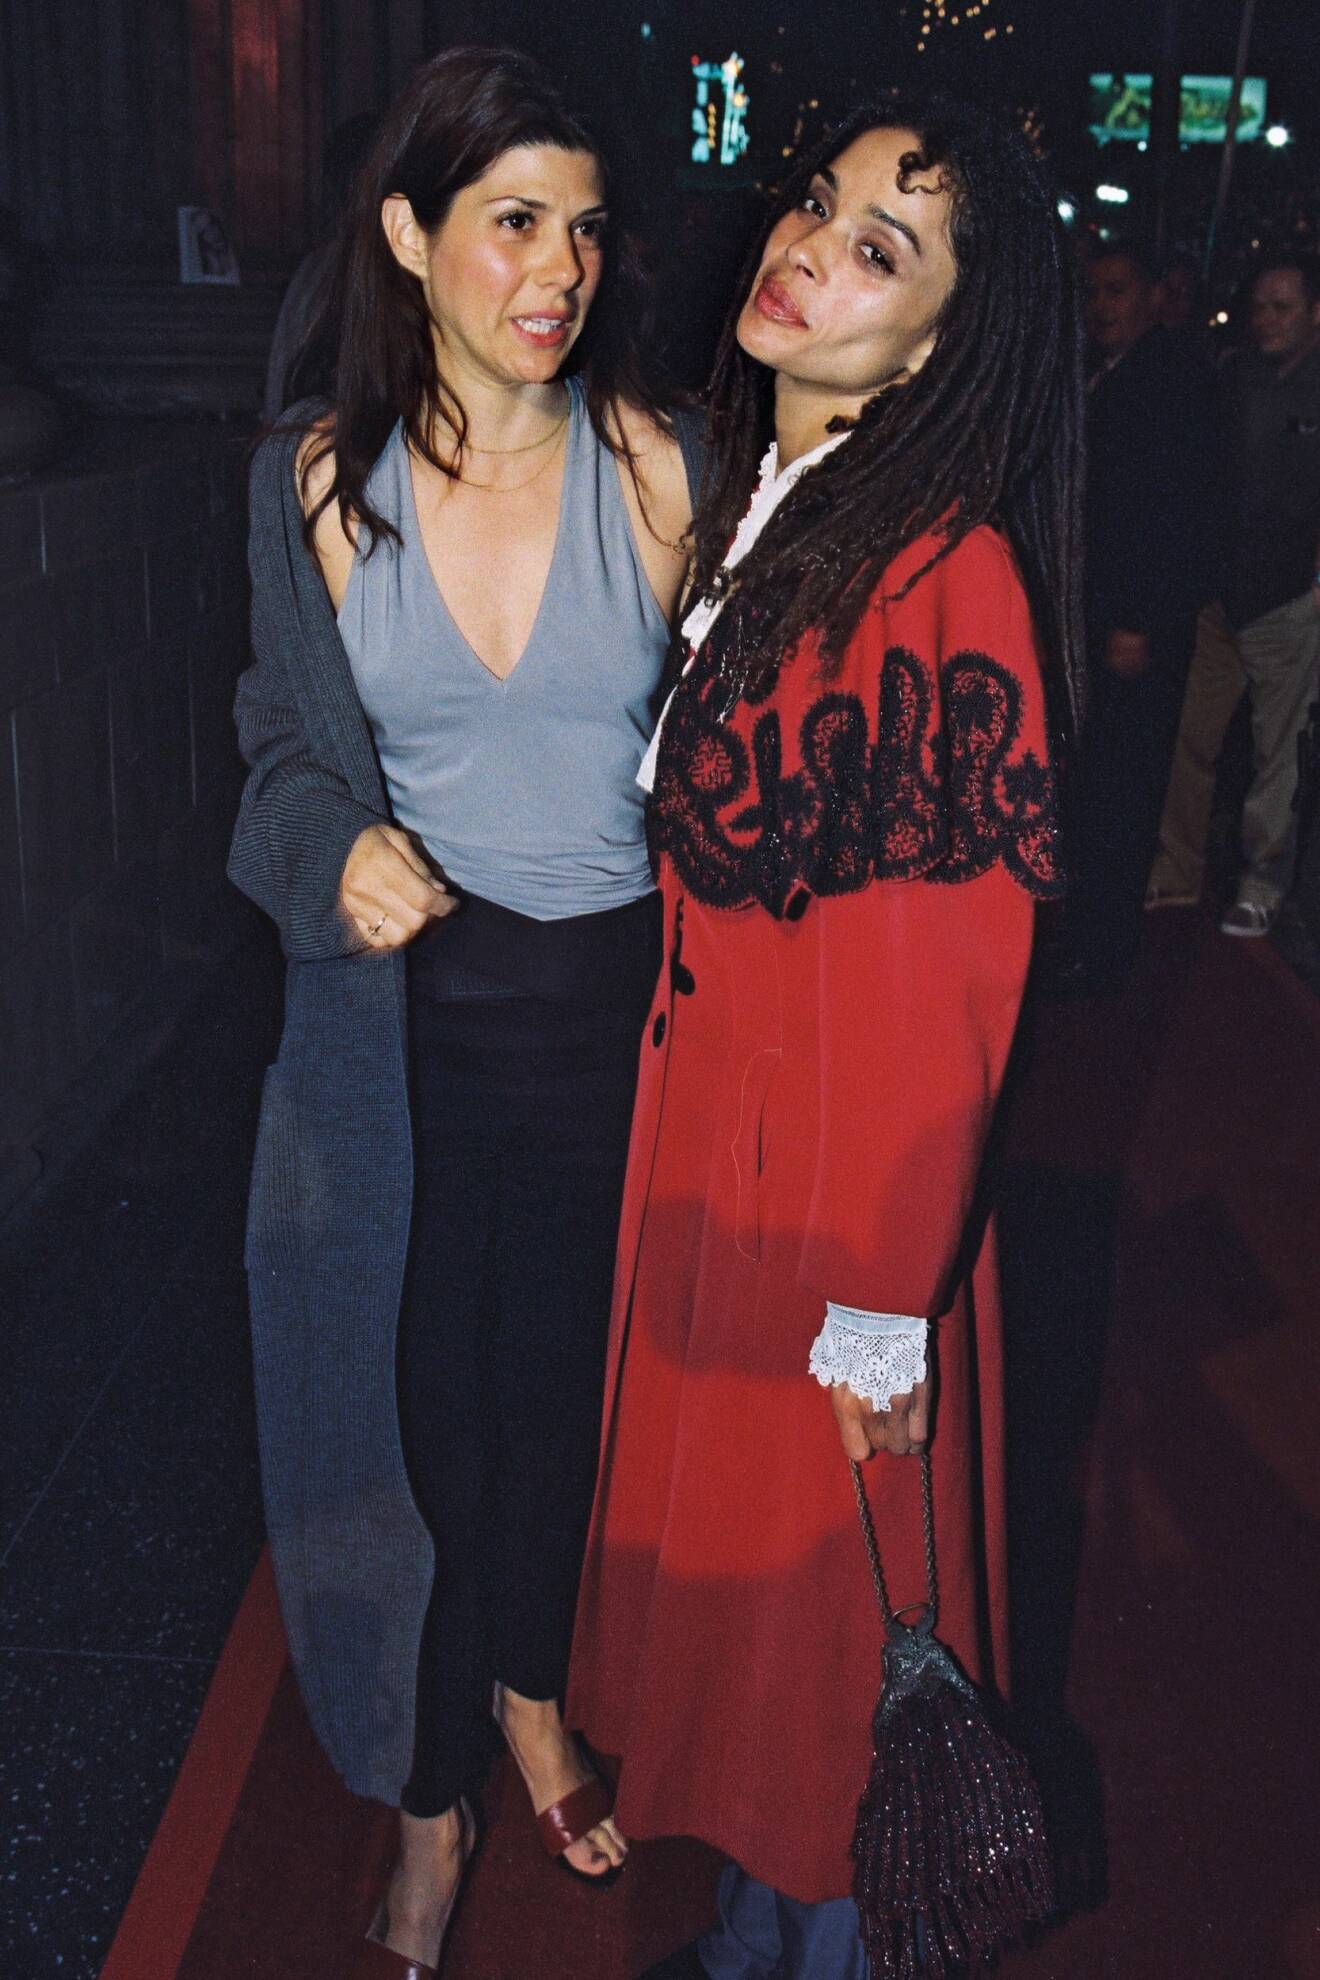 Bästa vännerna Marisa Tomei och Lisa Bonet, 1999. Marisa Tomei är bland annat gudmor till Lisas dotter Zoe Kravitz.